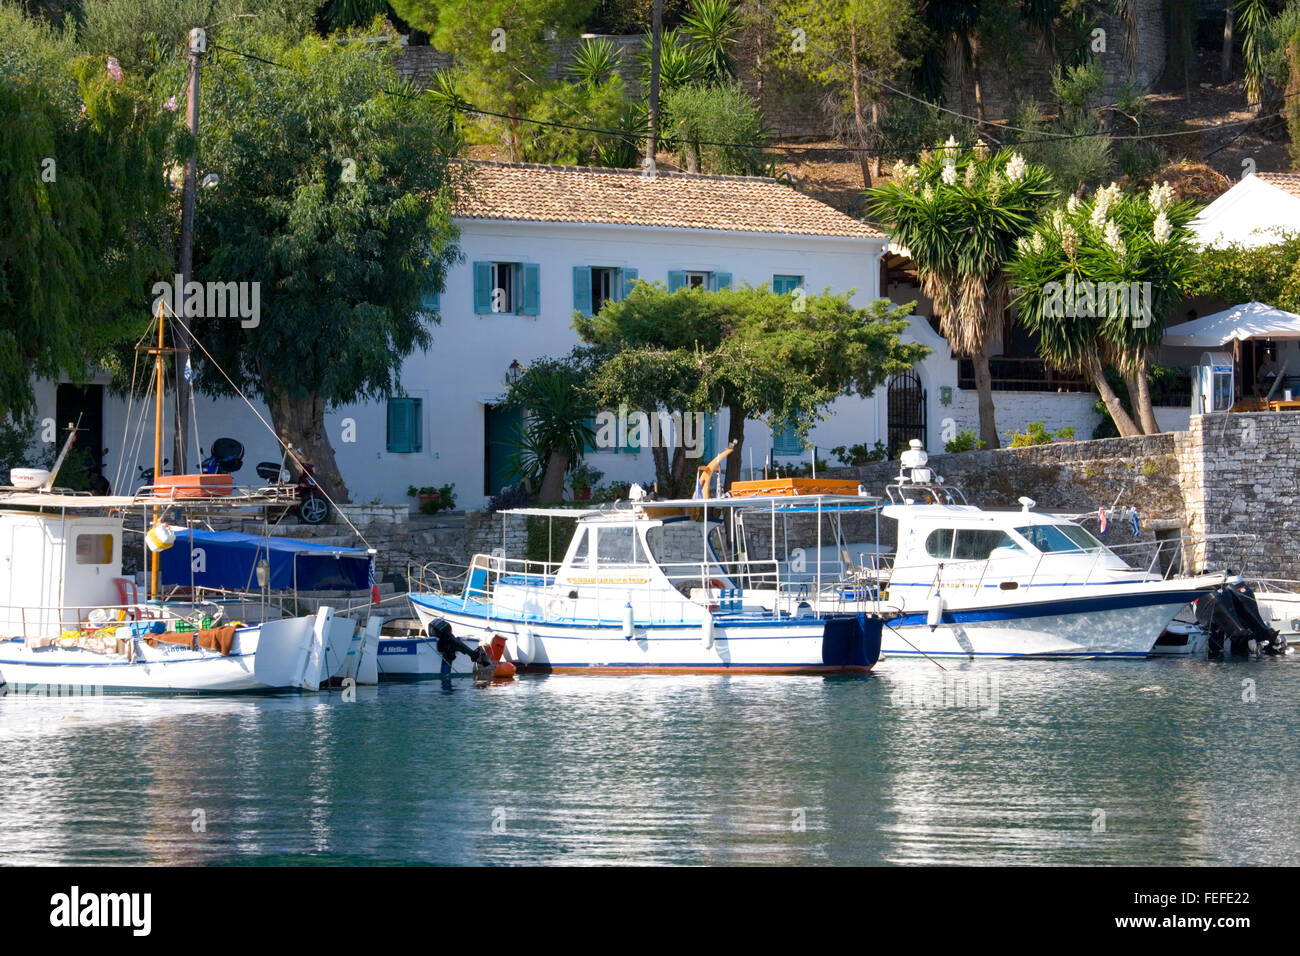 Kringels, Korfu, Ionische Inseln, Griechenland. Blick über den geschützten Hafen. Stockfoto